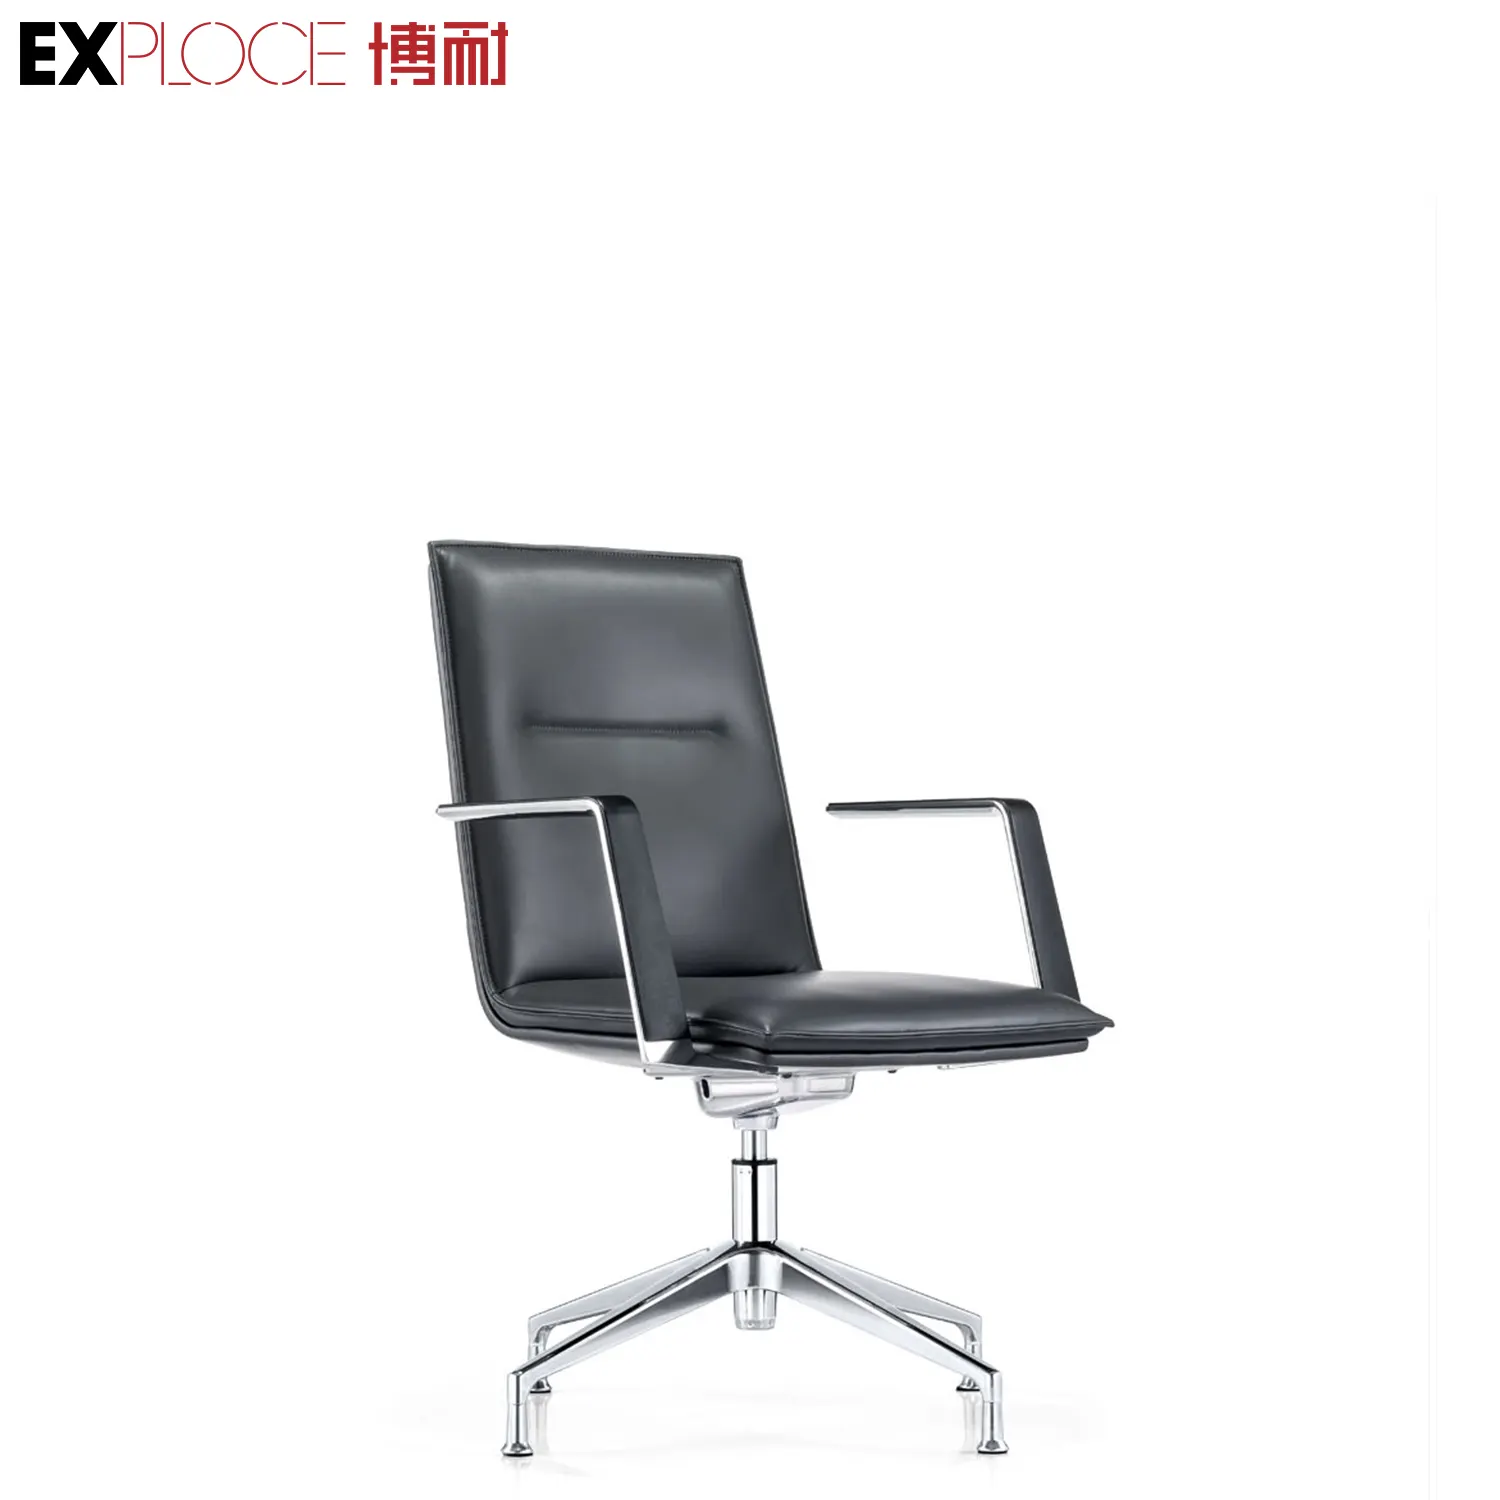 Hochwertiger drehbarer Computer-Schreibtischs tuhl mit echtem Leder Luxus Ergonomischer Executive Commercial Chair For Office